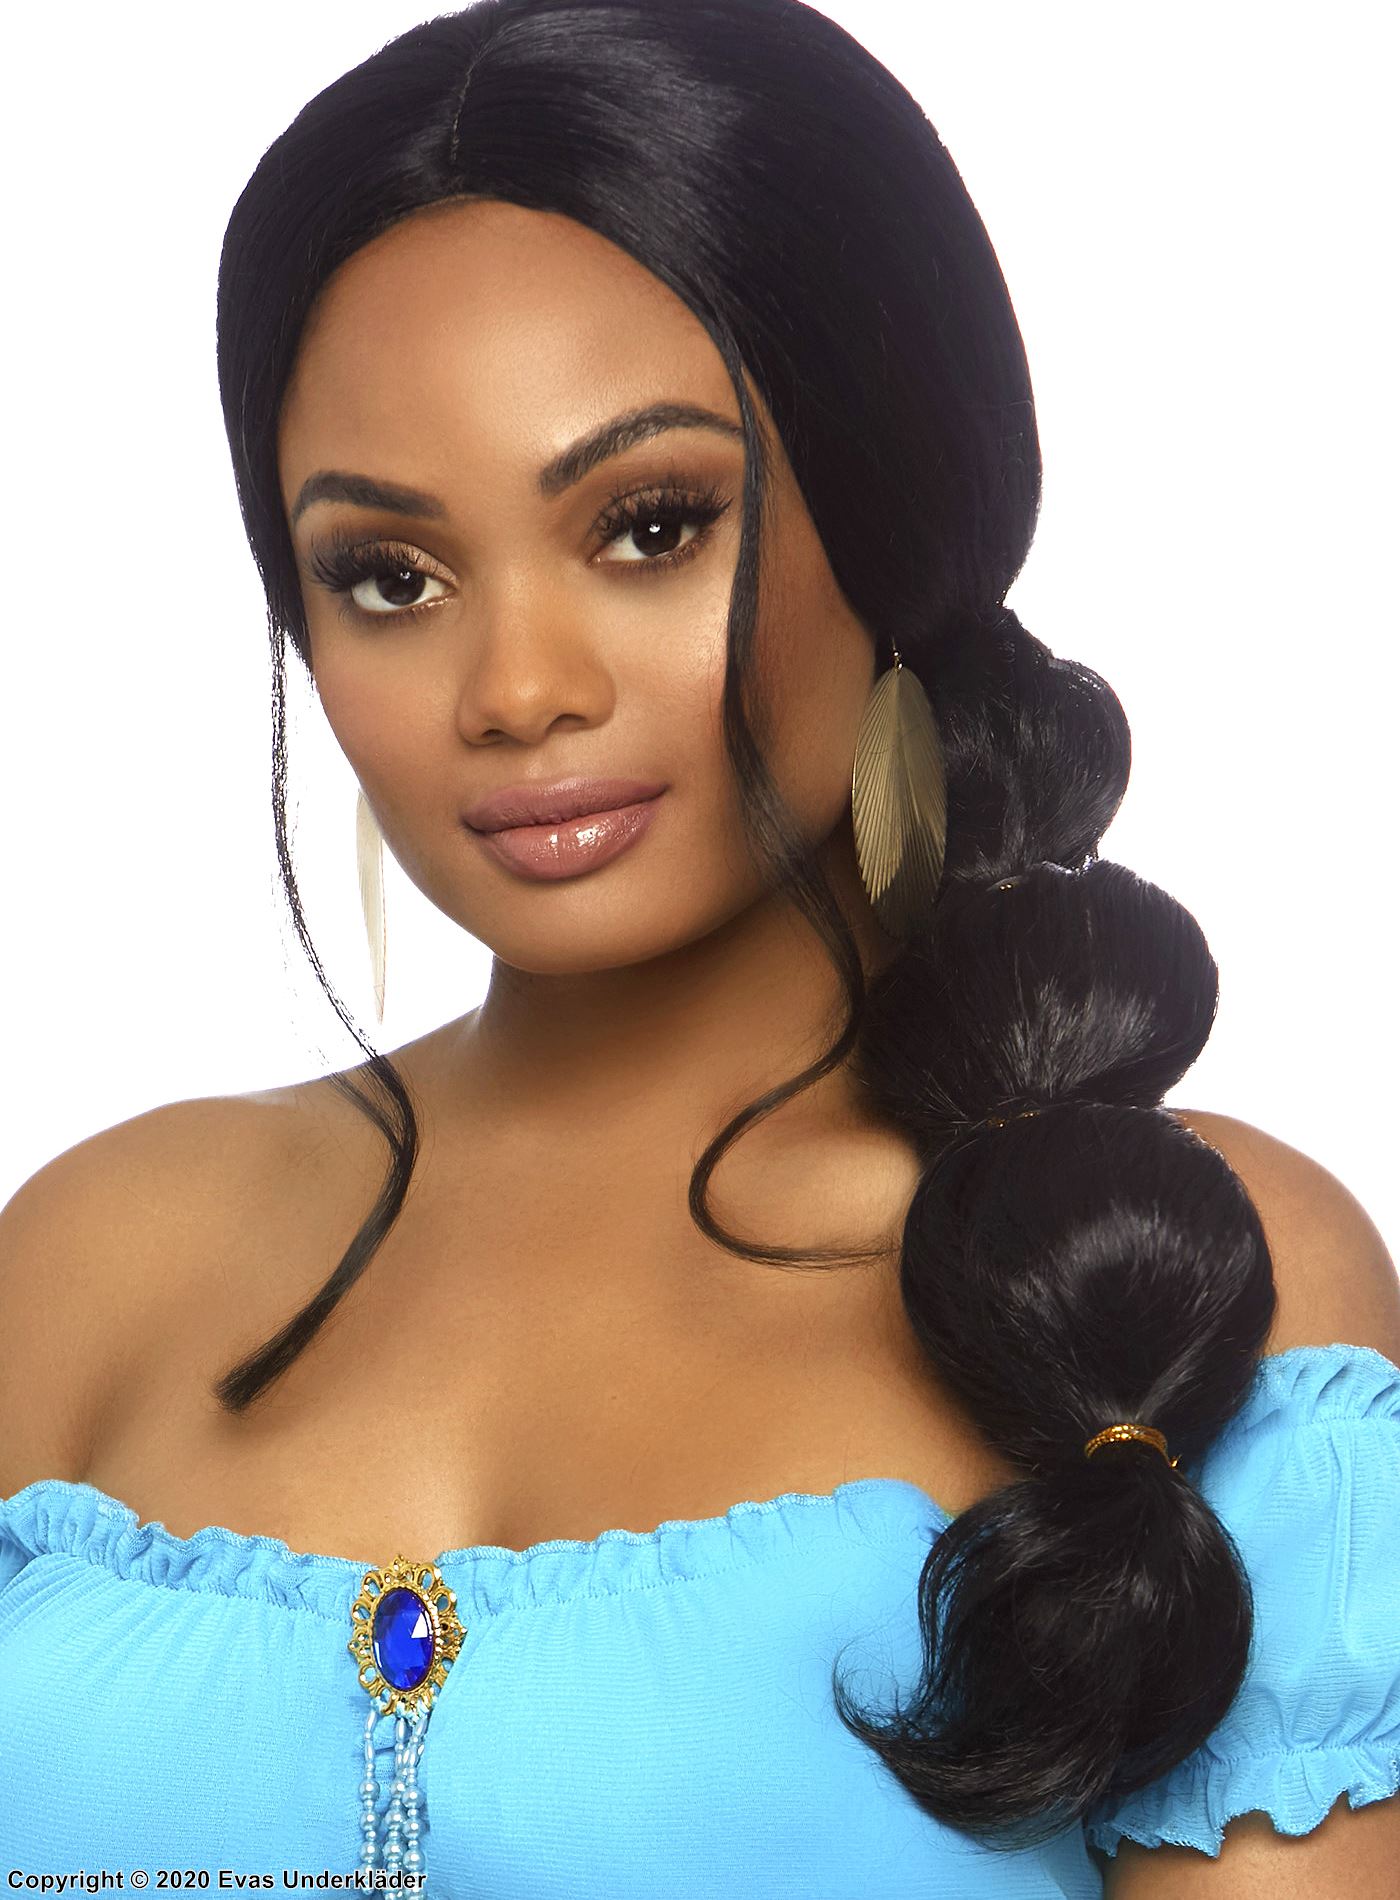 Prinsessan Jasmine från Aladdin, lång peruk med hästsvans och bubblor (frisyr)